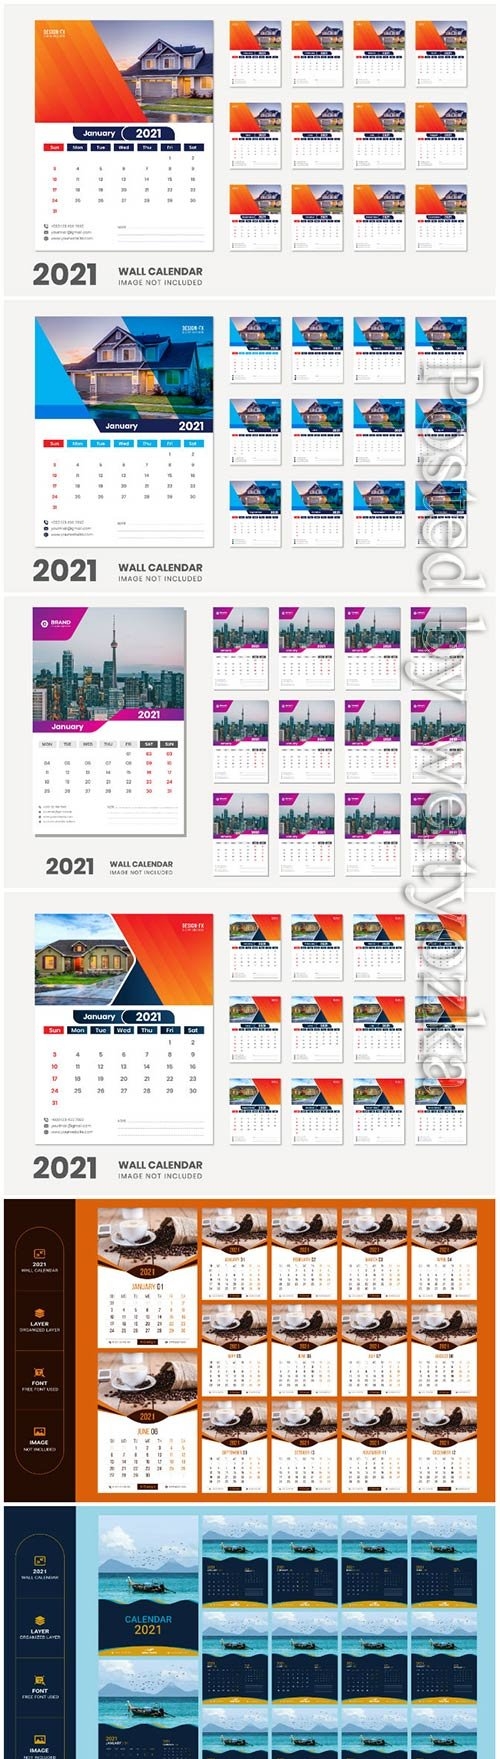 2021 desk calendar - 12 months included